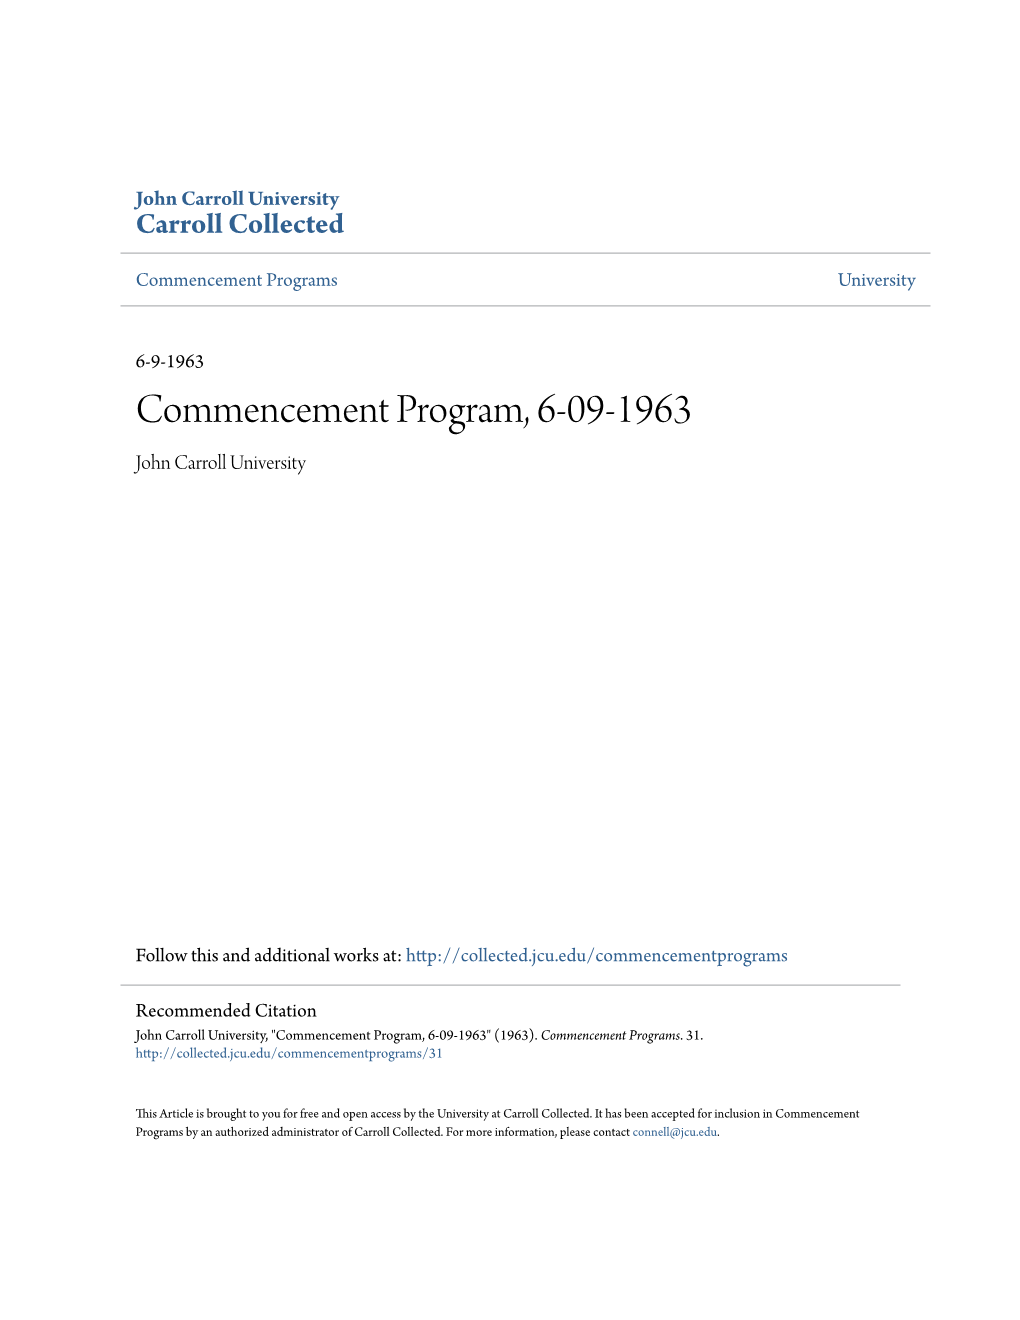 Commencement Program, 6-09-1963 John Carroll University